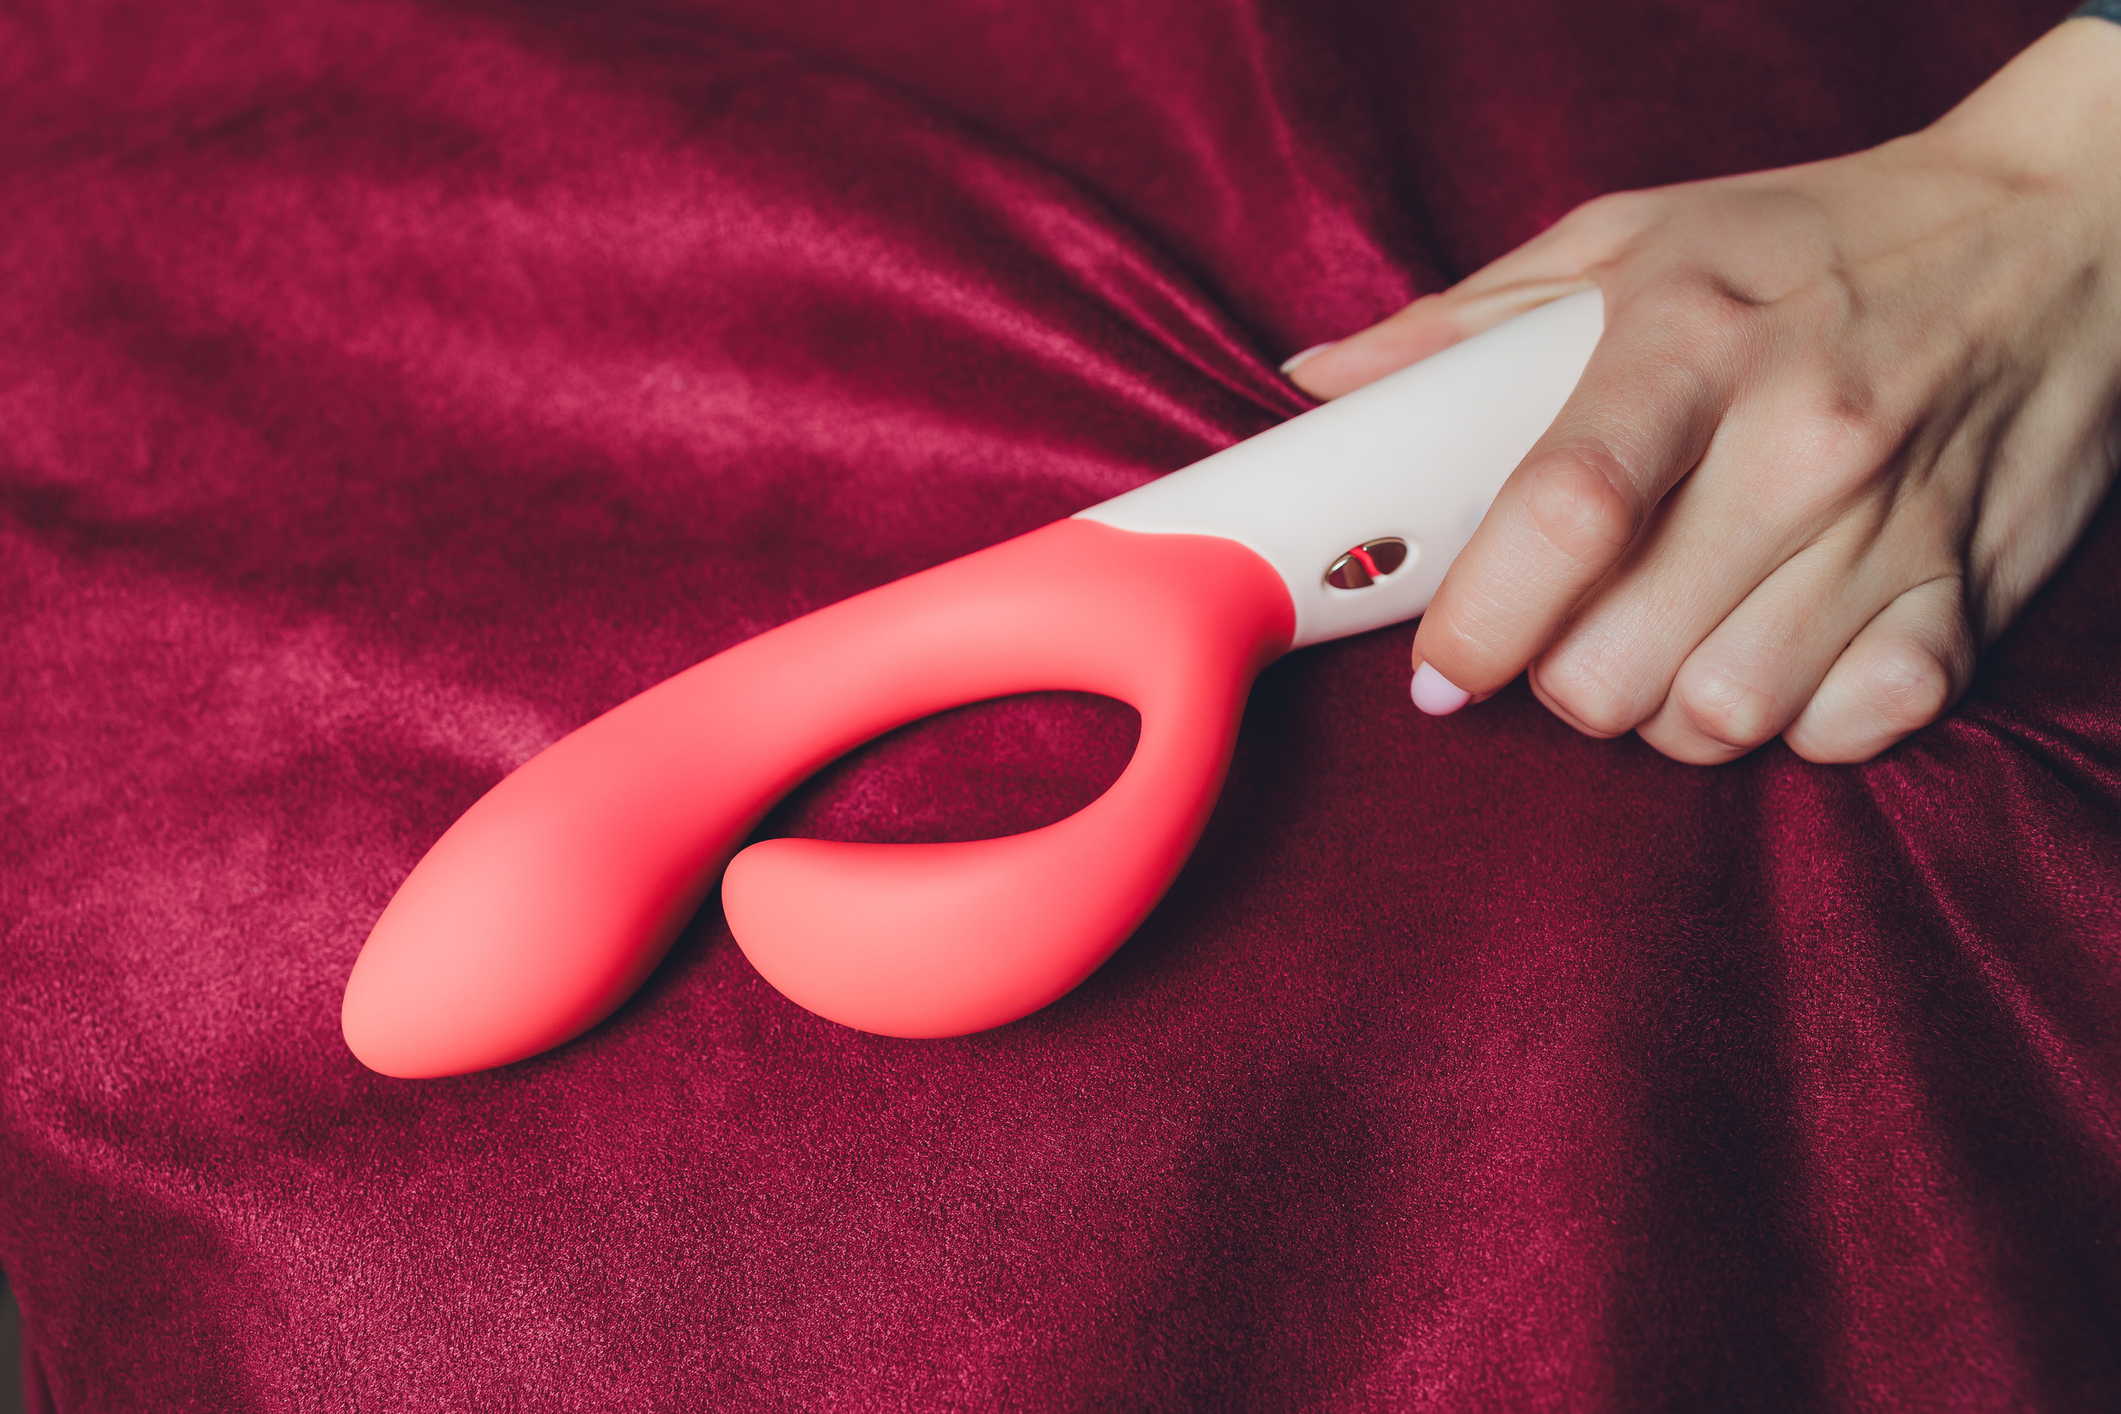 Doutor Jairo · Brinquedos sexuais 7 dicas simples para usá-los com segurança